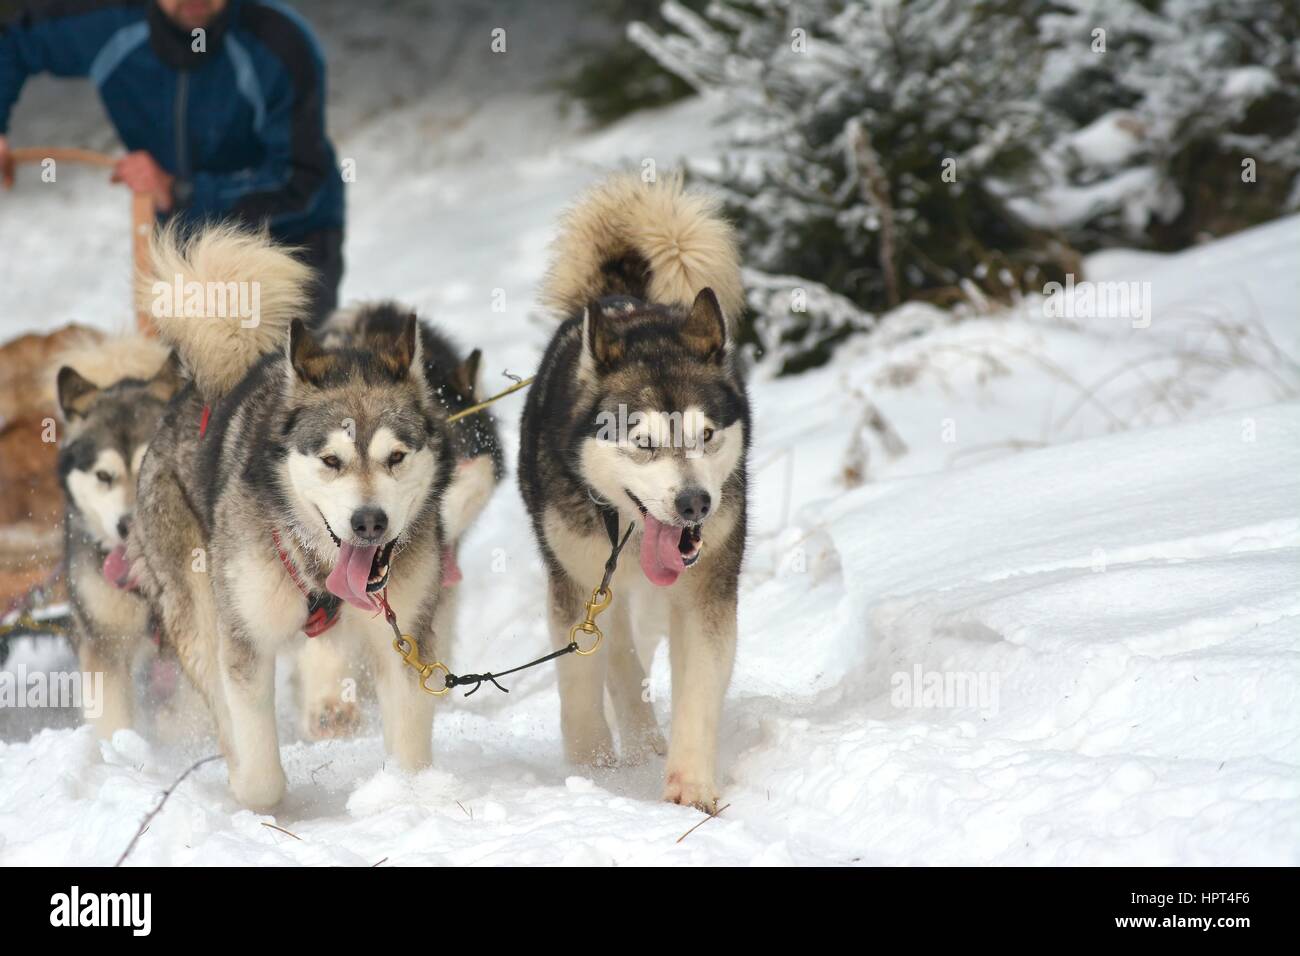 Musher attelage conducteur et Husky Sibérien à neige Hiver concours course en forêt Banque D'Images